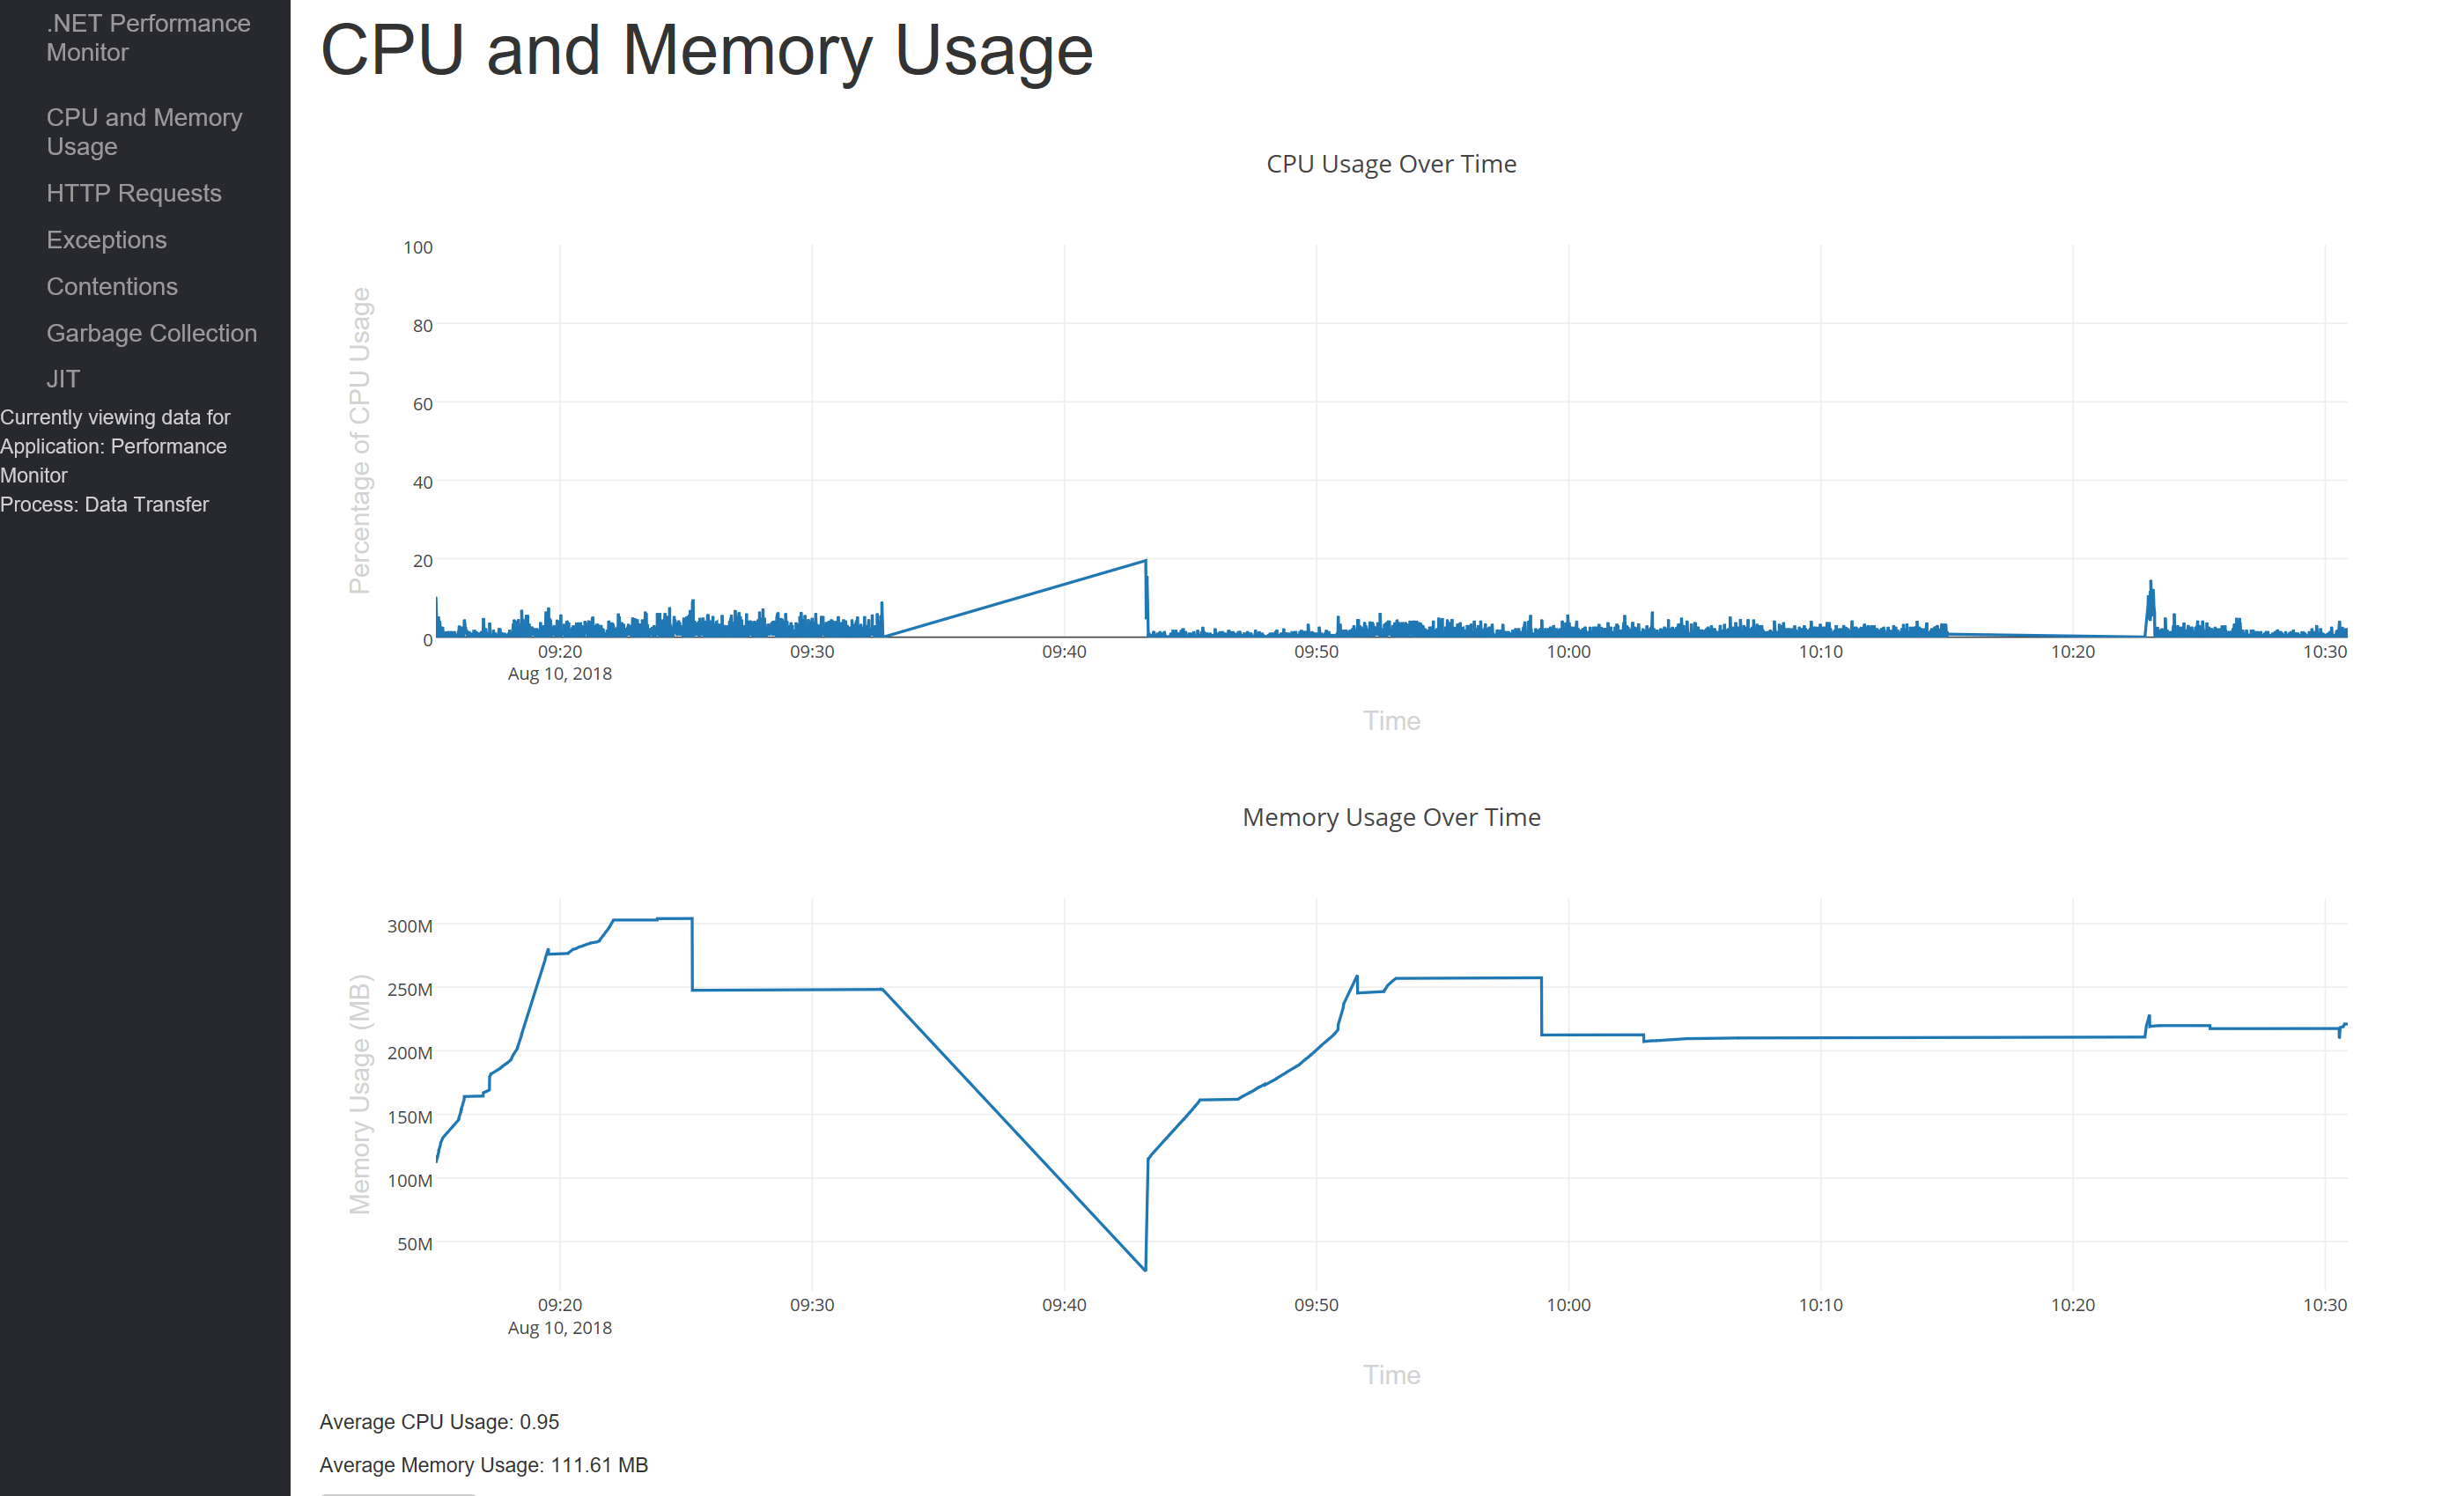 CPU and Memory graphs